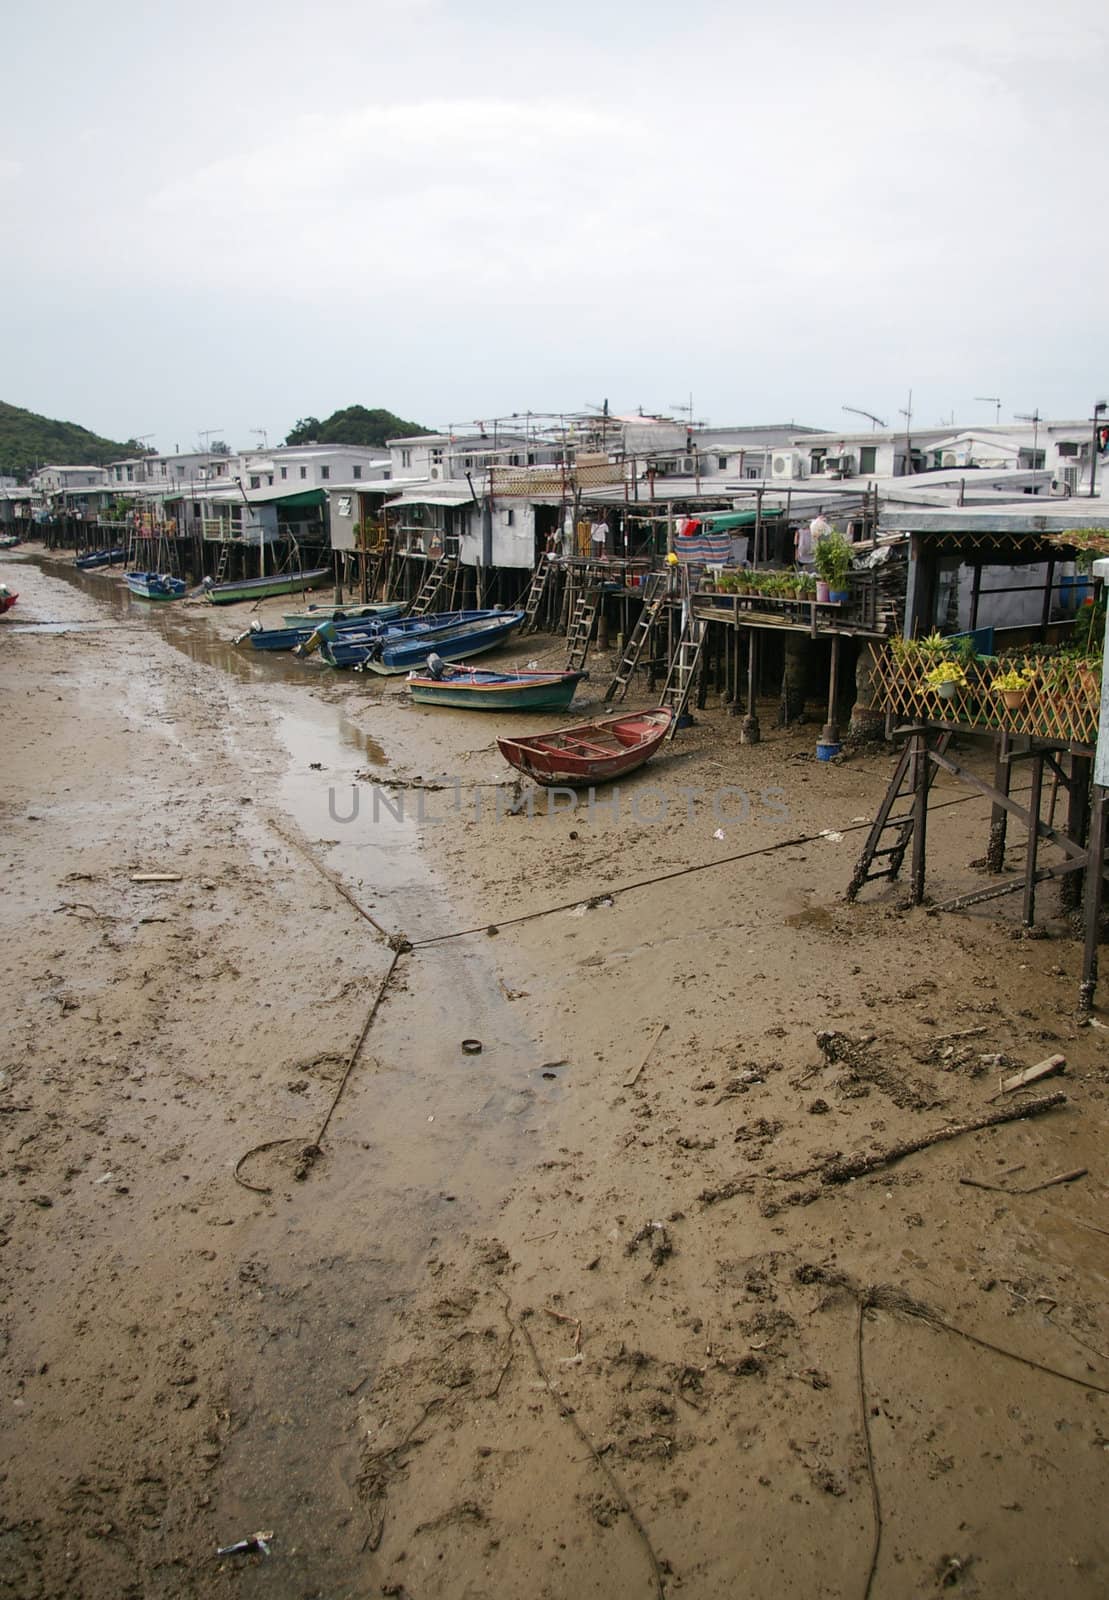 Tai O fishing village in Hong Kong by kawing921